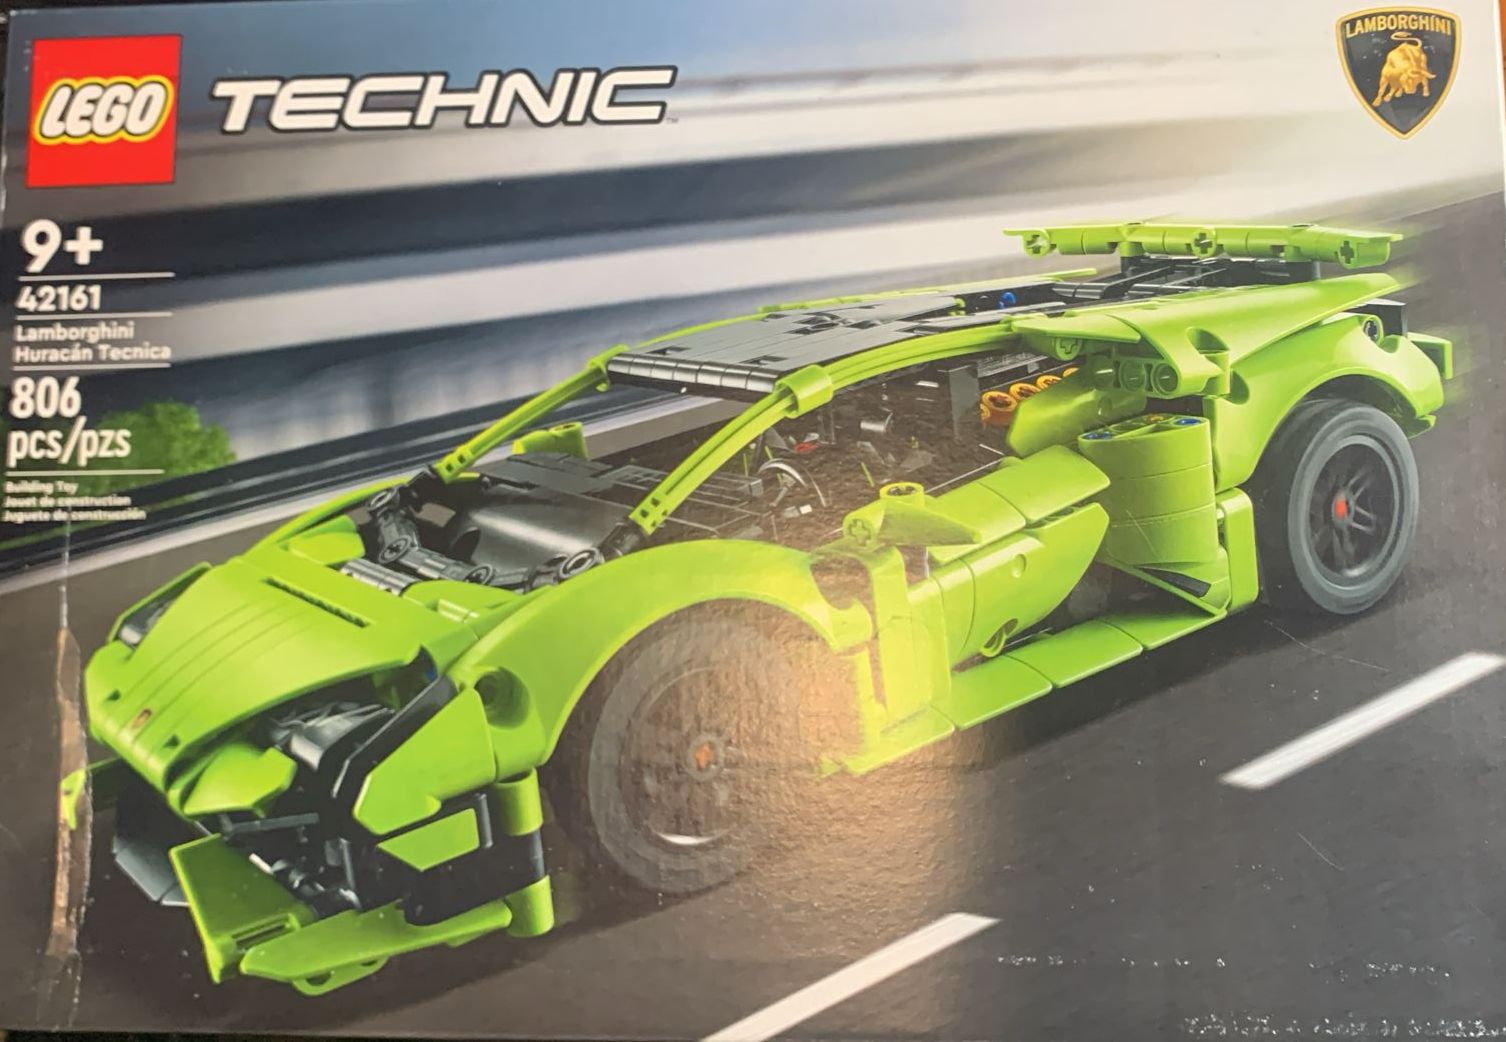 LEGO Technic 42161 Lamborghini +9, 806 Pcs